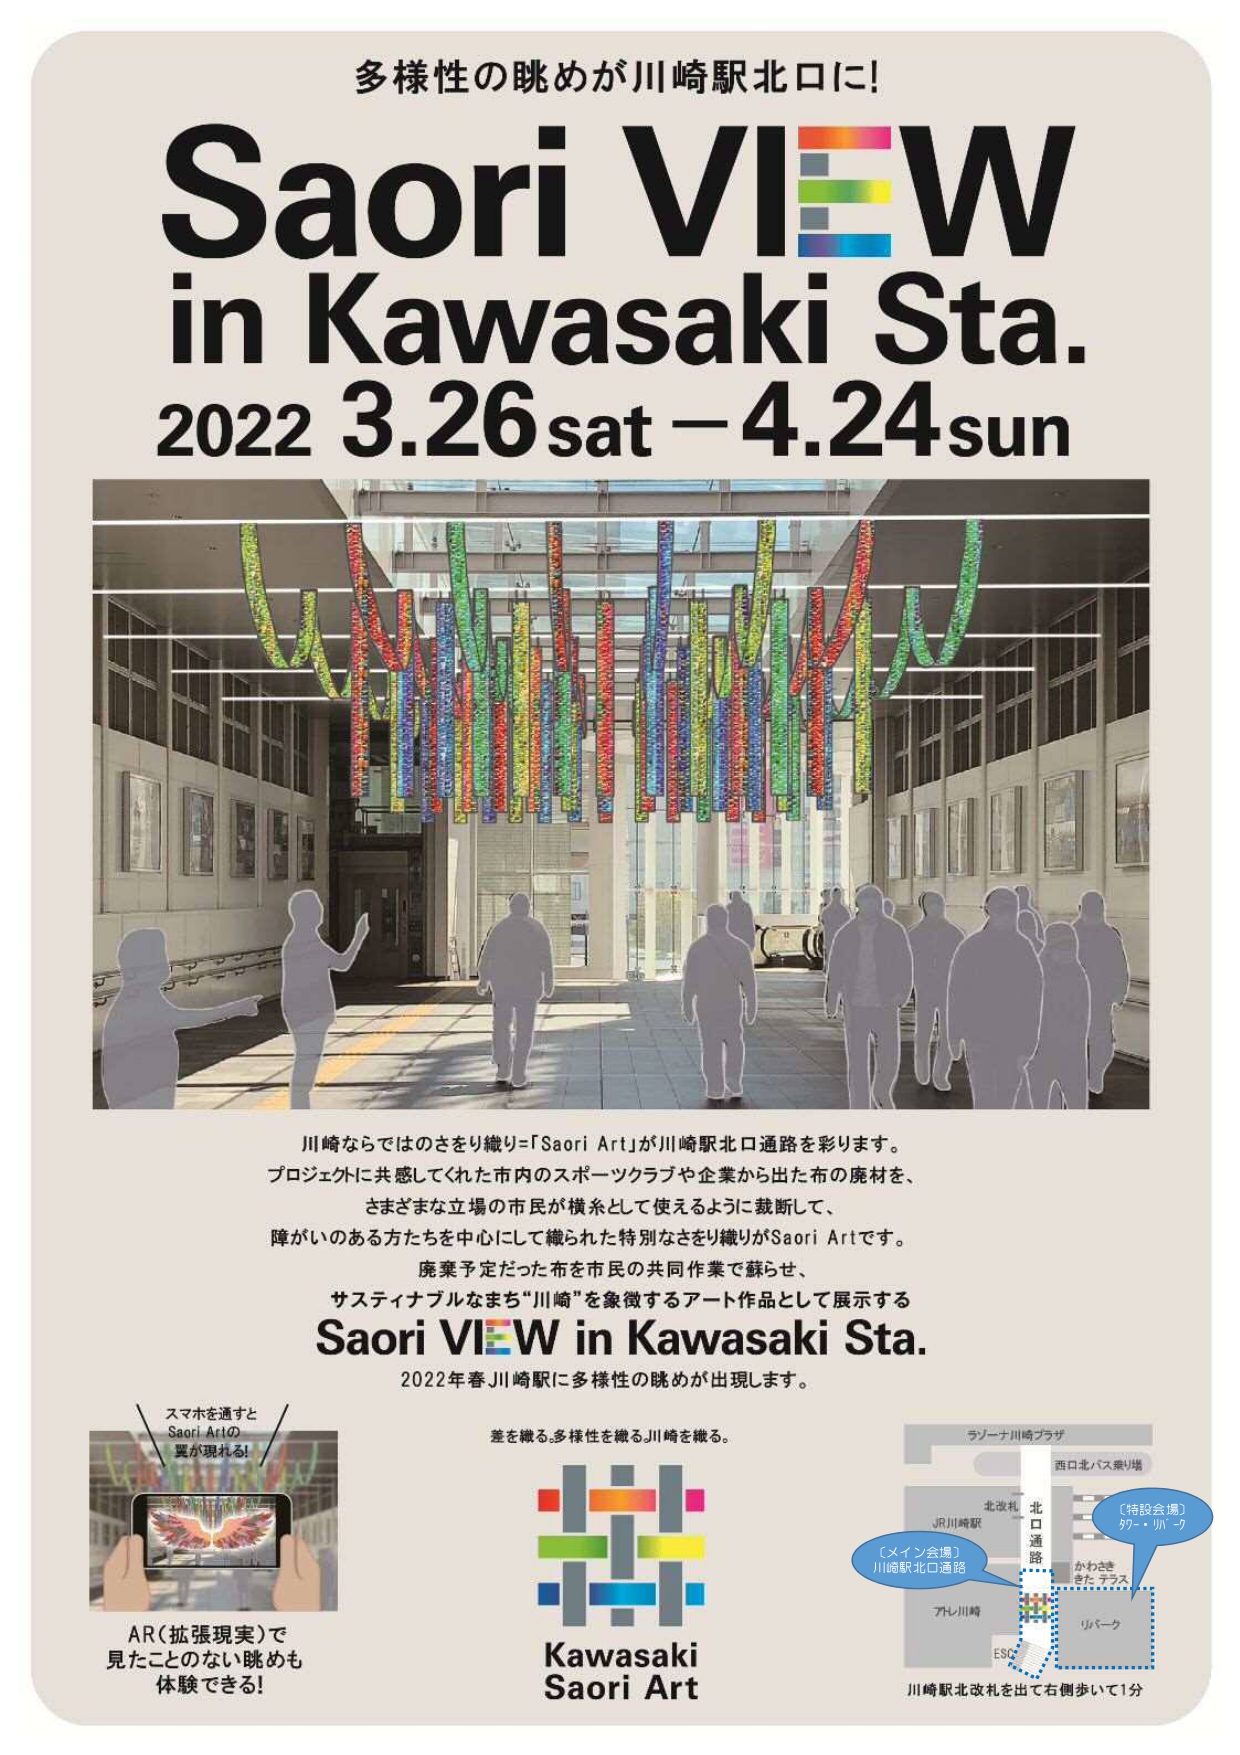 イメージ：Saori VIEW in Kawasaki Sta.（サオリ ビュー イン カワサキ ステーション）